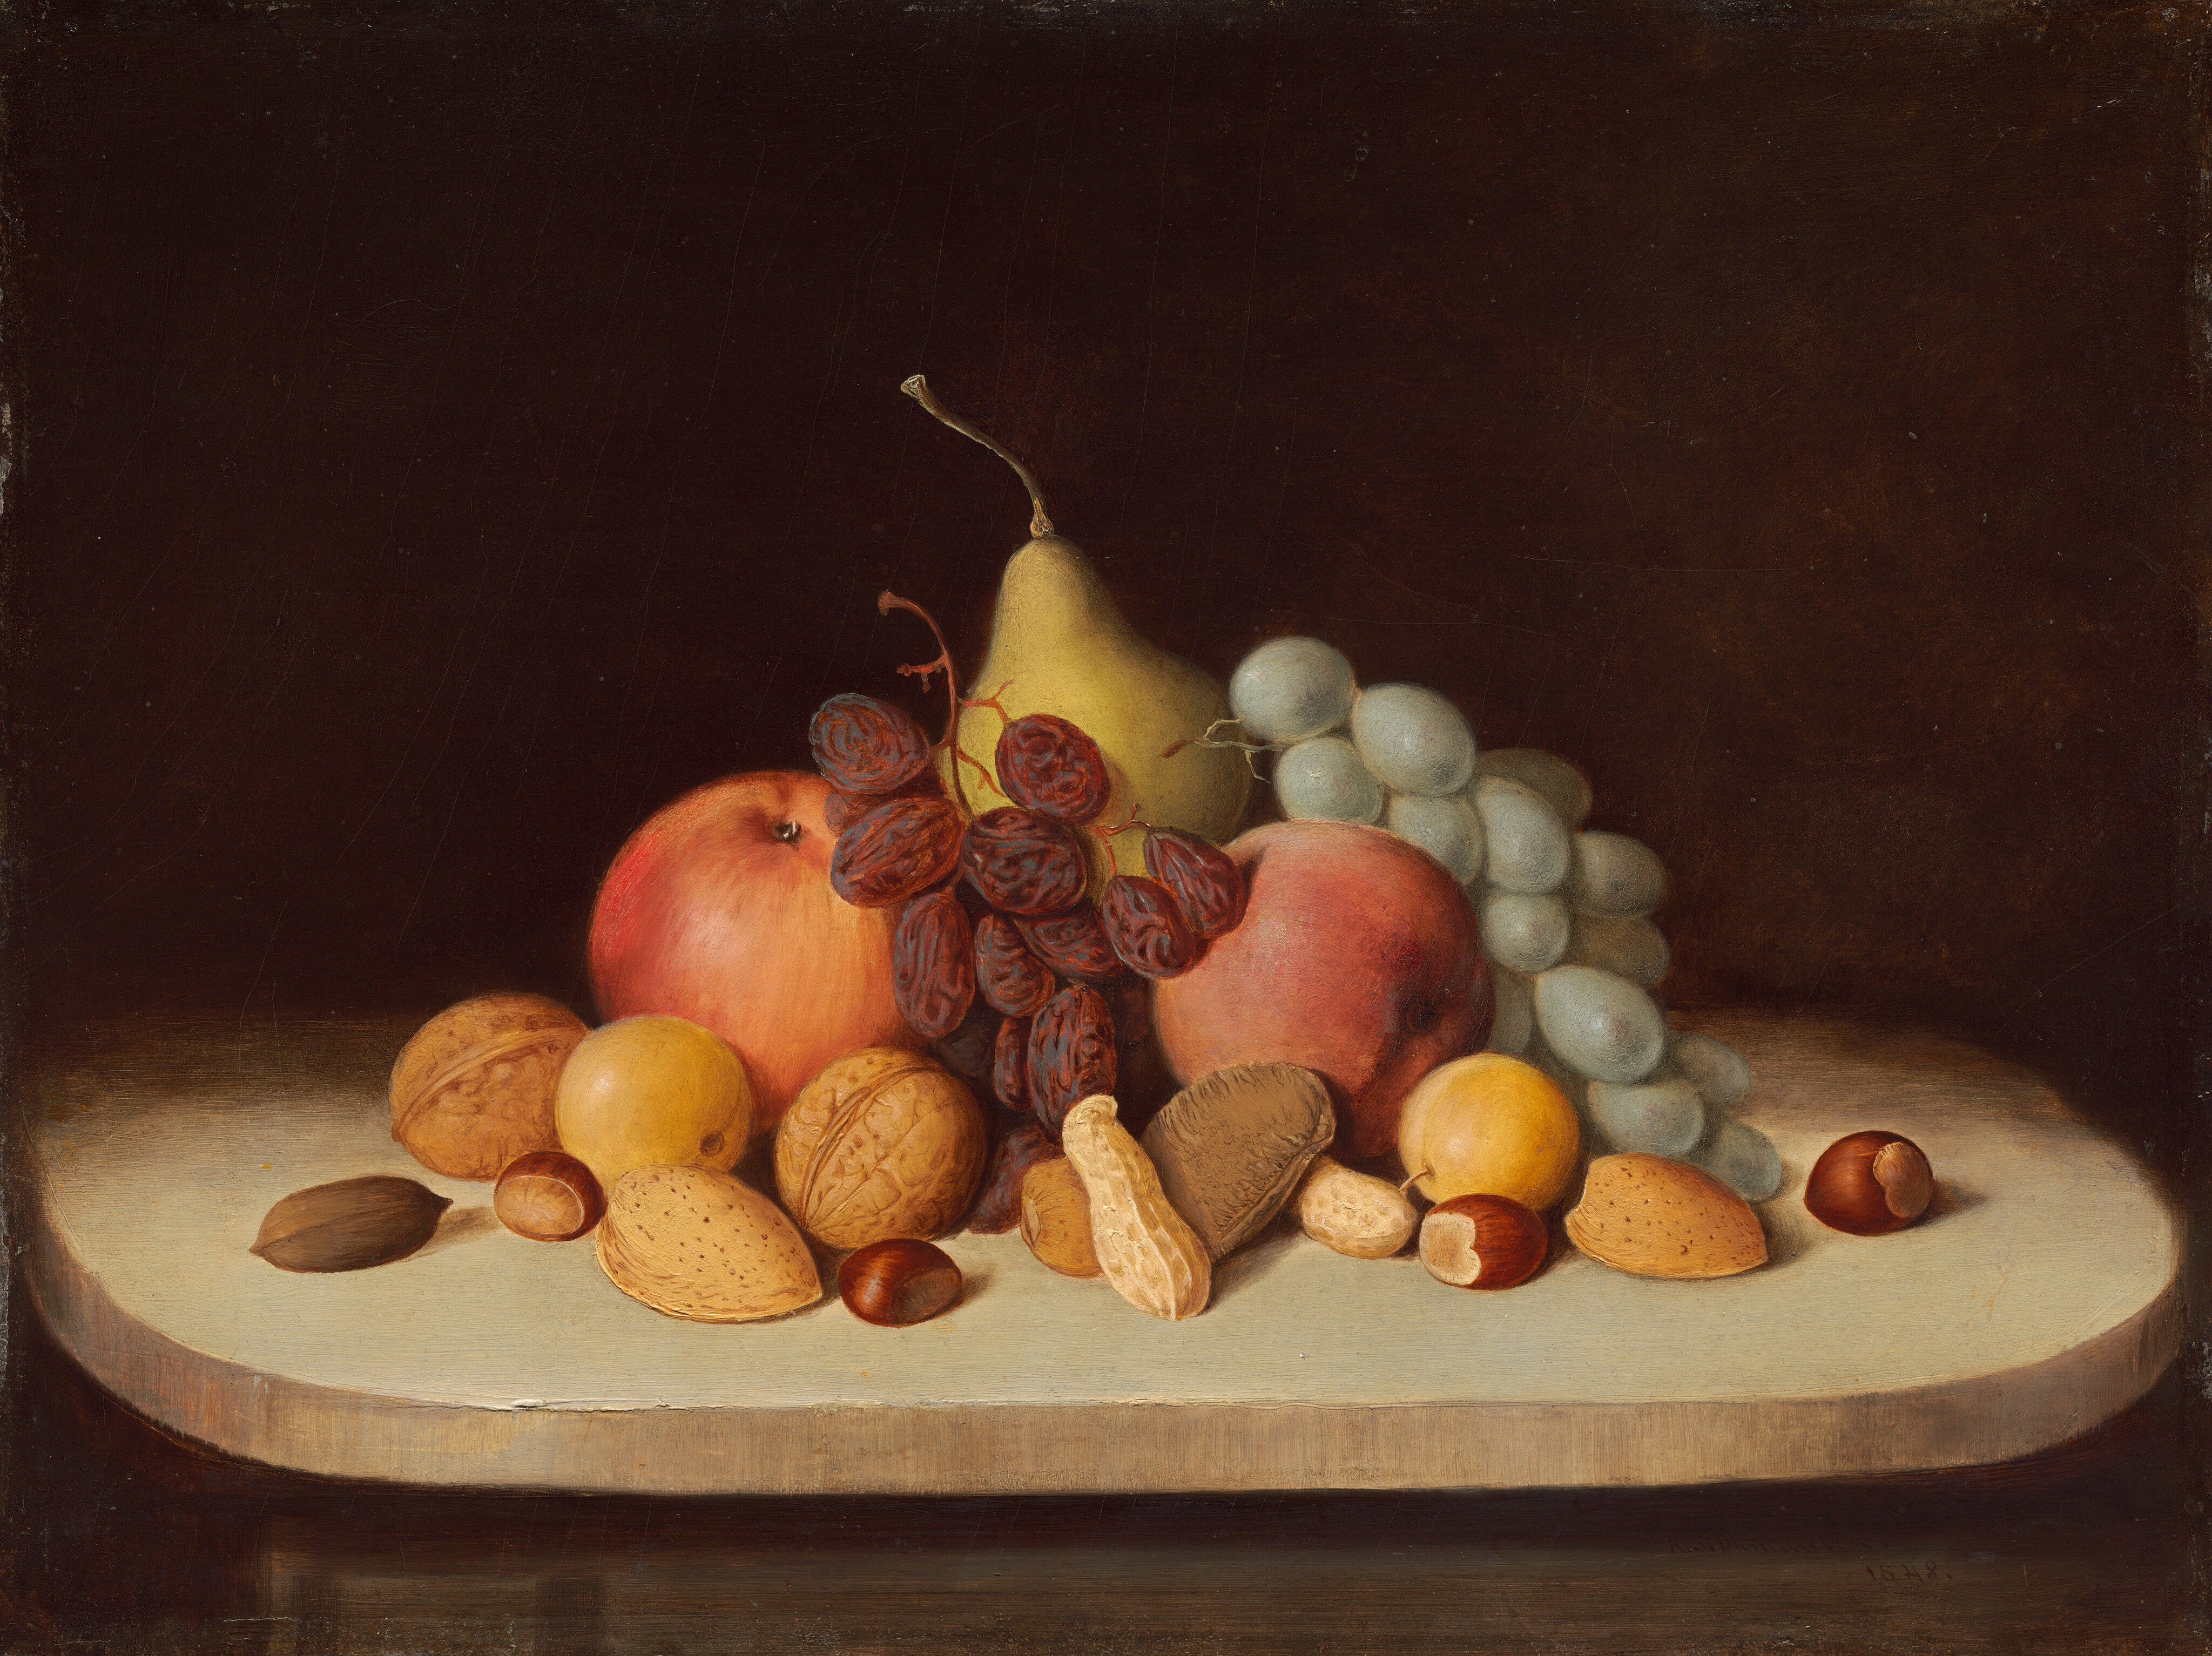 Csendélet gyümölccsel és dióval by Robert Duncanson - 1848 - 30.48 x 40.64 cm 